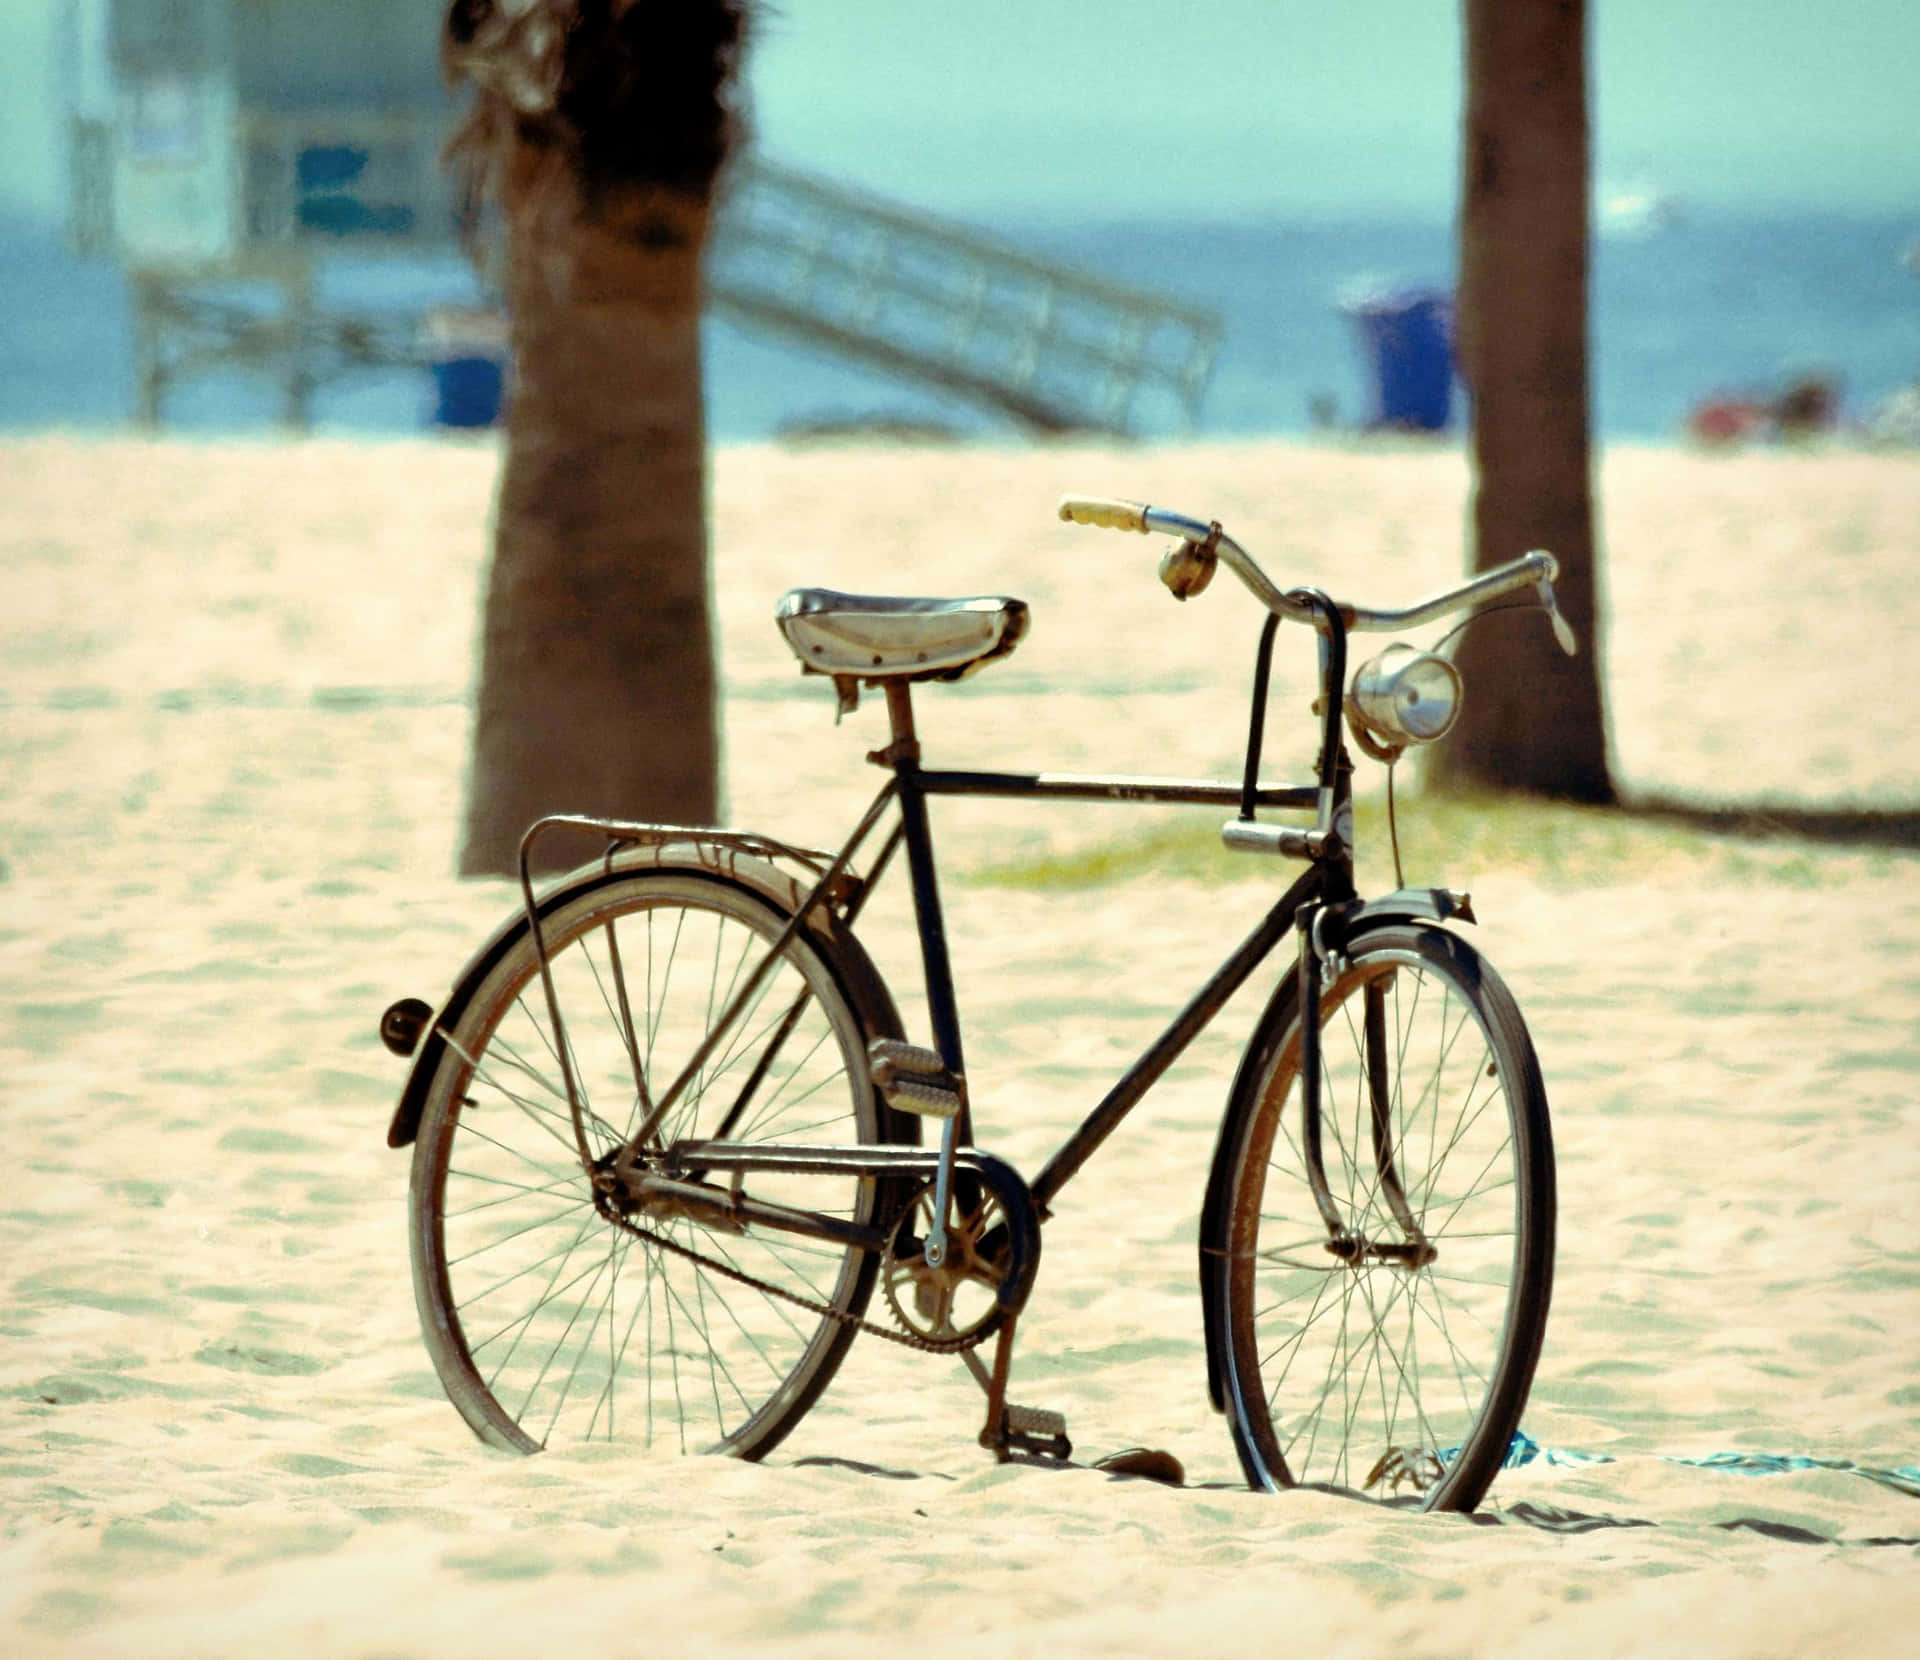 Bicicletavintage De Playa Junto Al Mar Fondo de pantalla